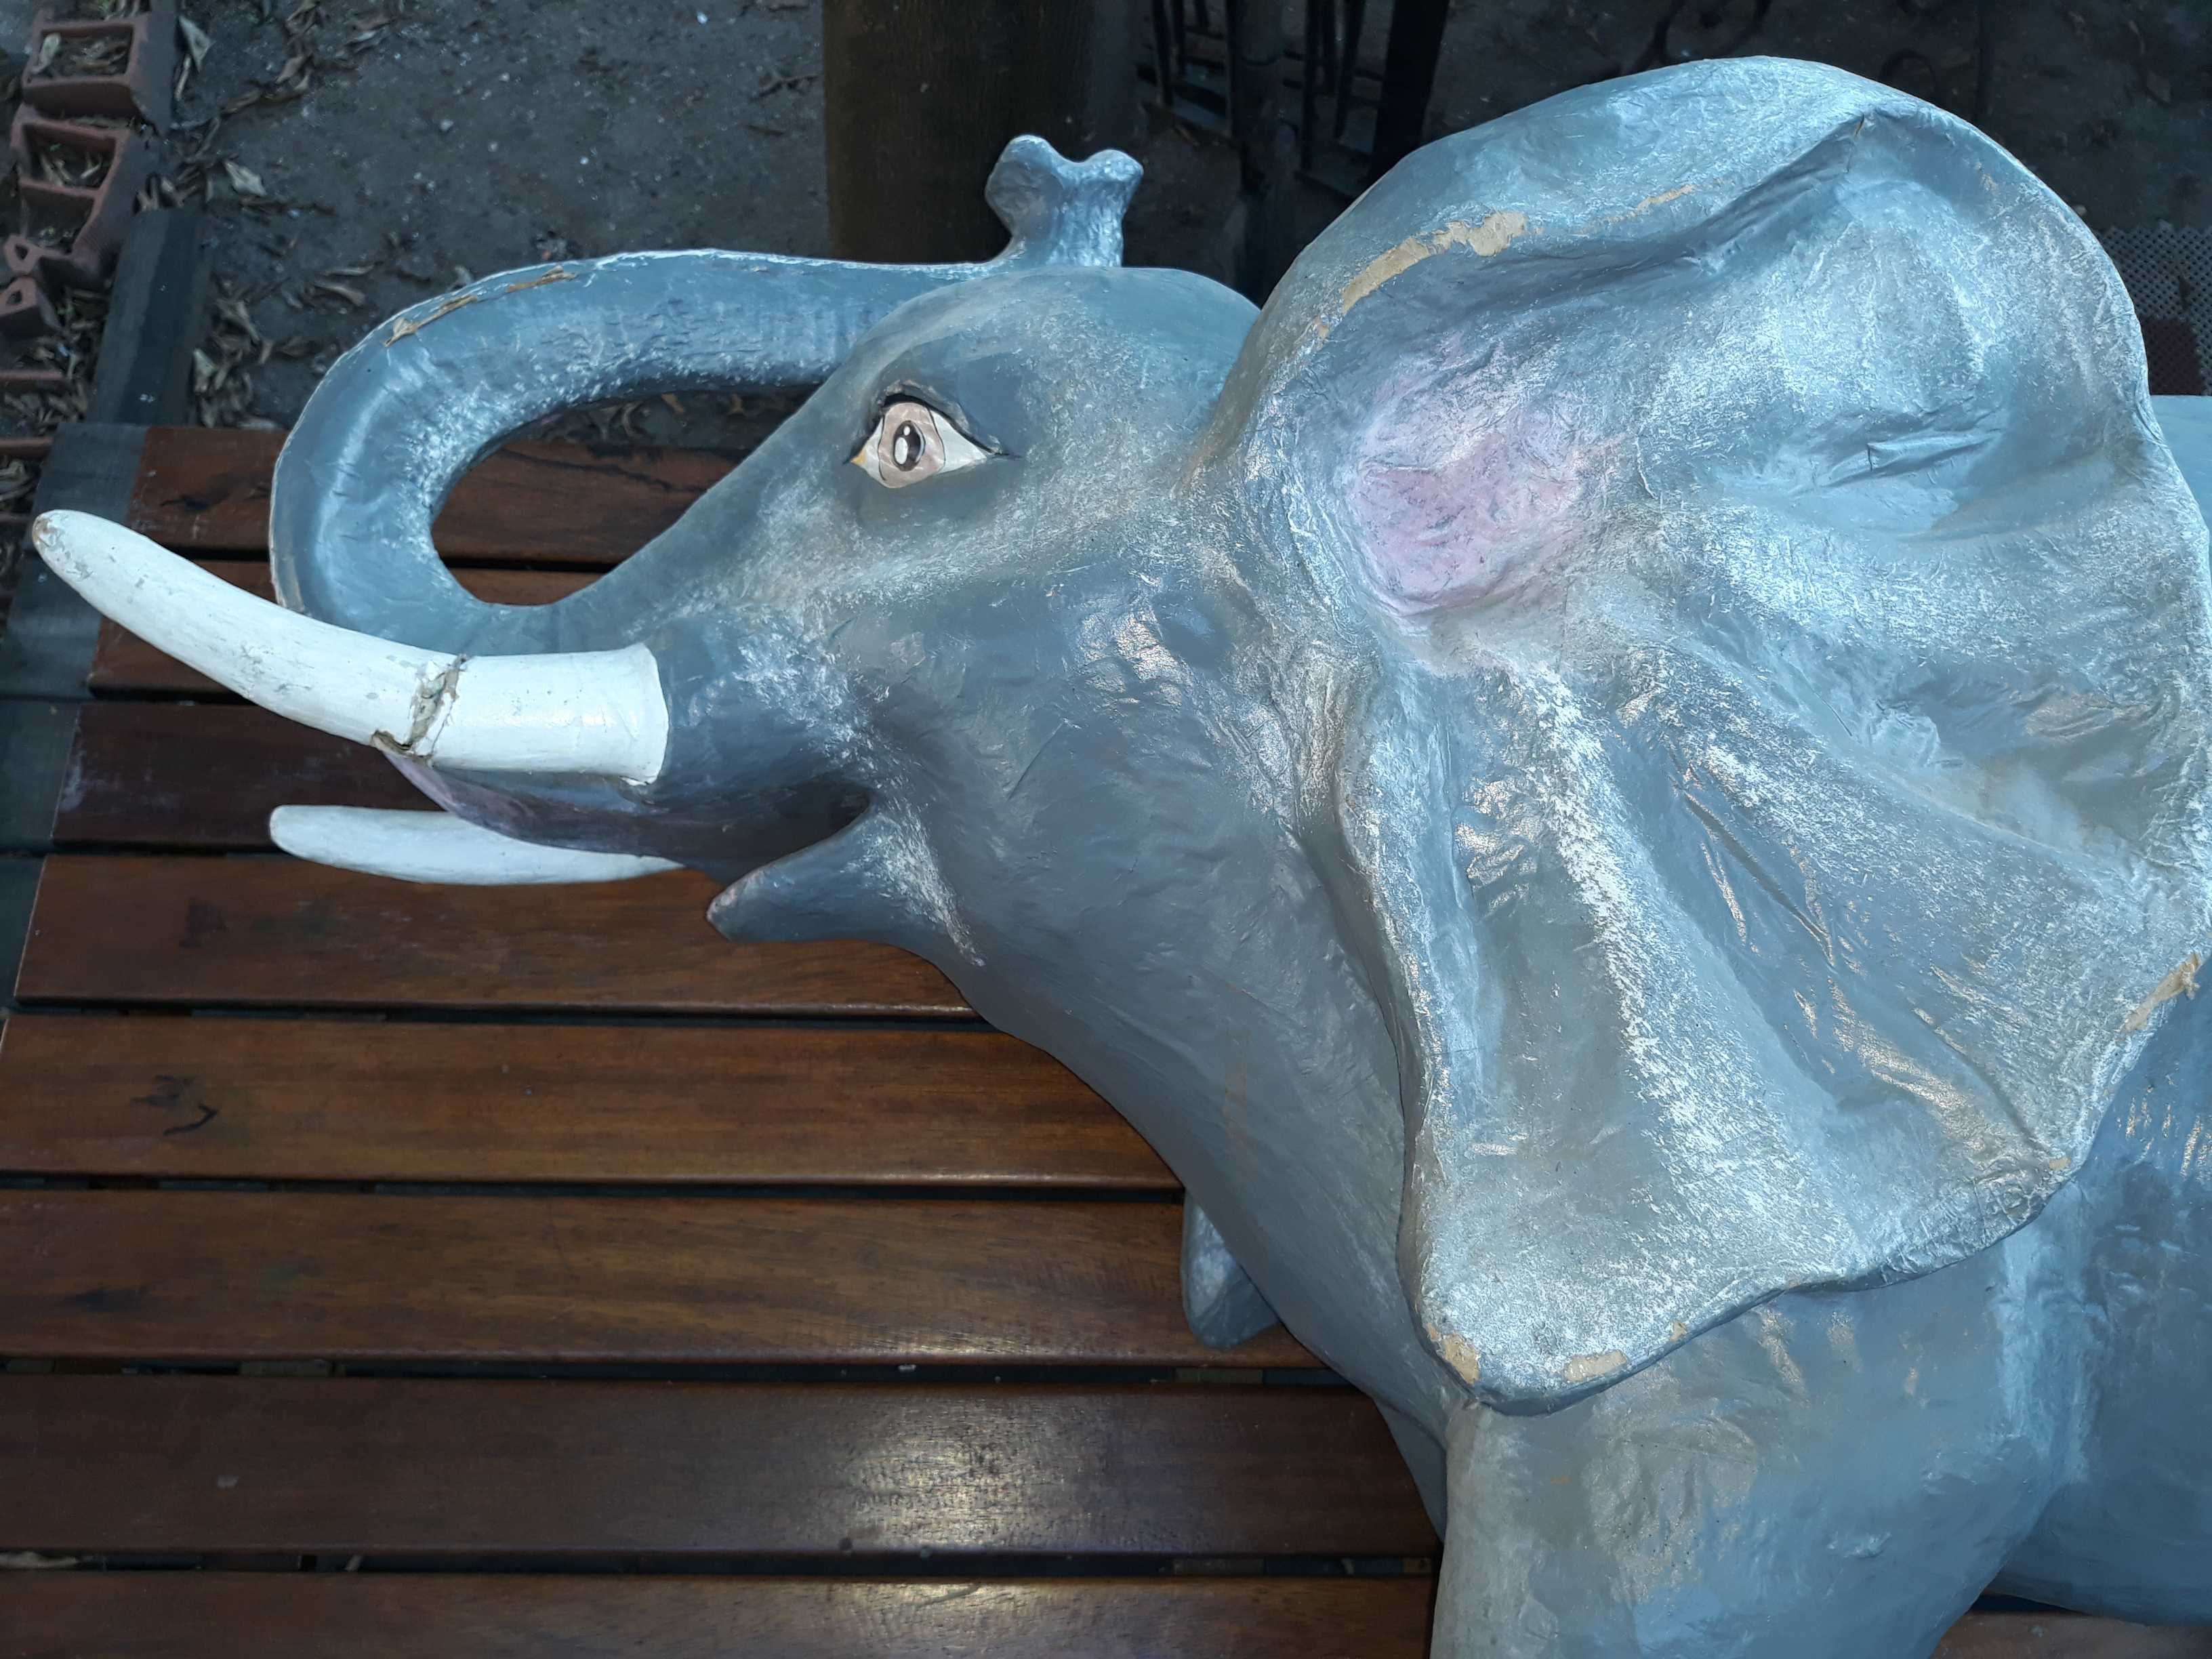 Elefante em papel machê, feito á mão